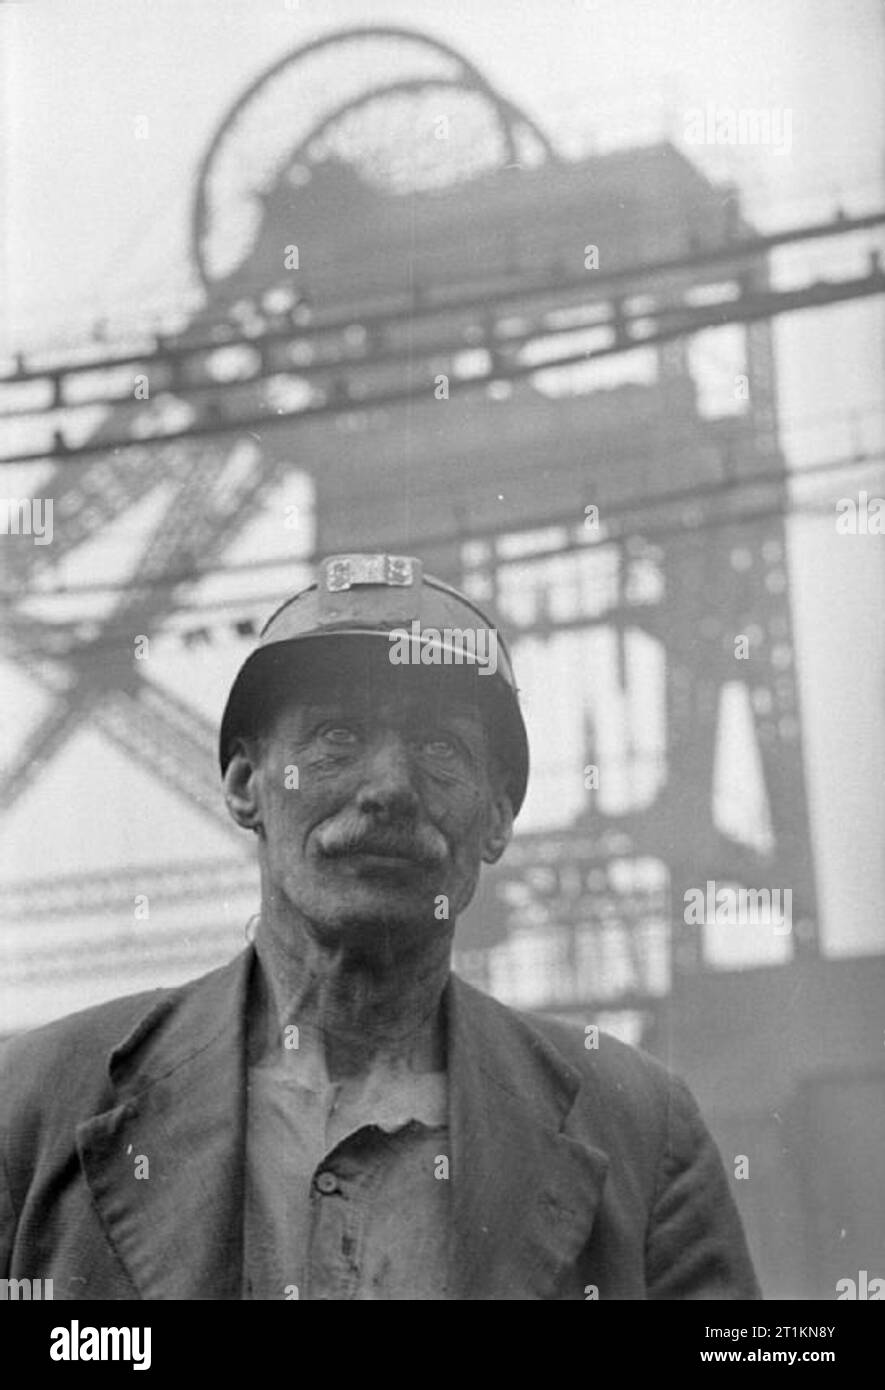 Mann von der Grube - Leben an der Kohle Gesicht, Großbritannien, 1942 ein markanter Kopf und Schultern Portrait von Coal miner Fred Woolhouse. Im Hintergrund kann der Grube Kopf Maschinen gesehen werden, hoch über ihm. Stockfoto